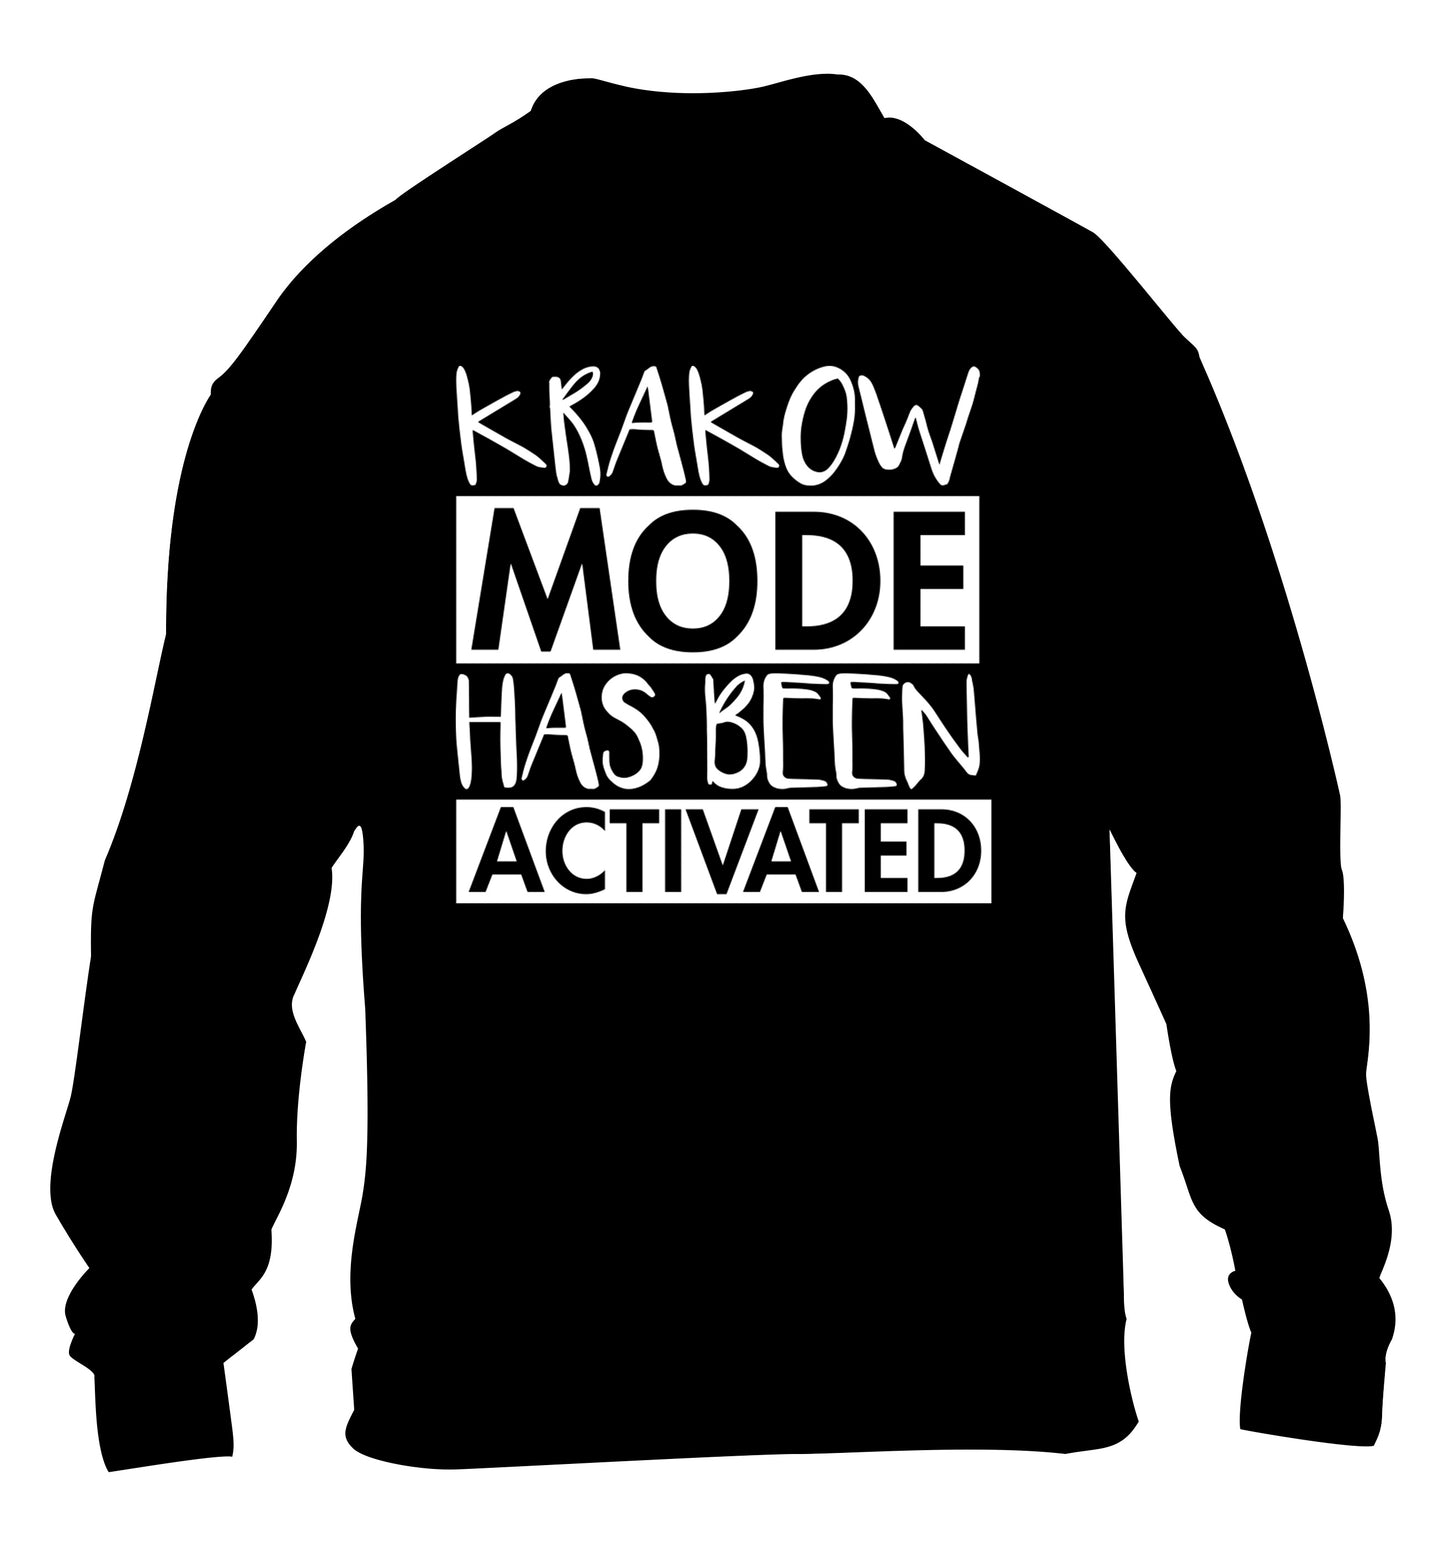 Krakow mode has been activated children's black sweater 12-13 Years